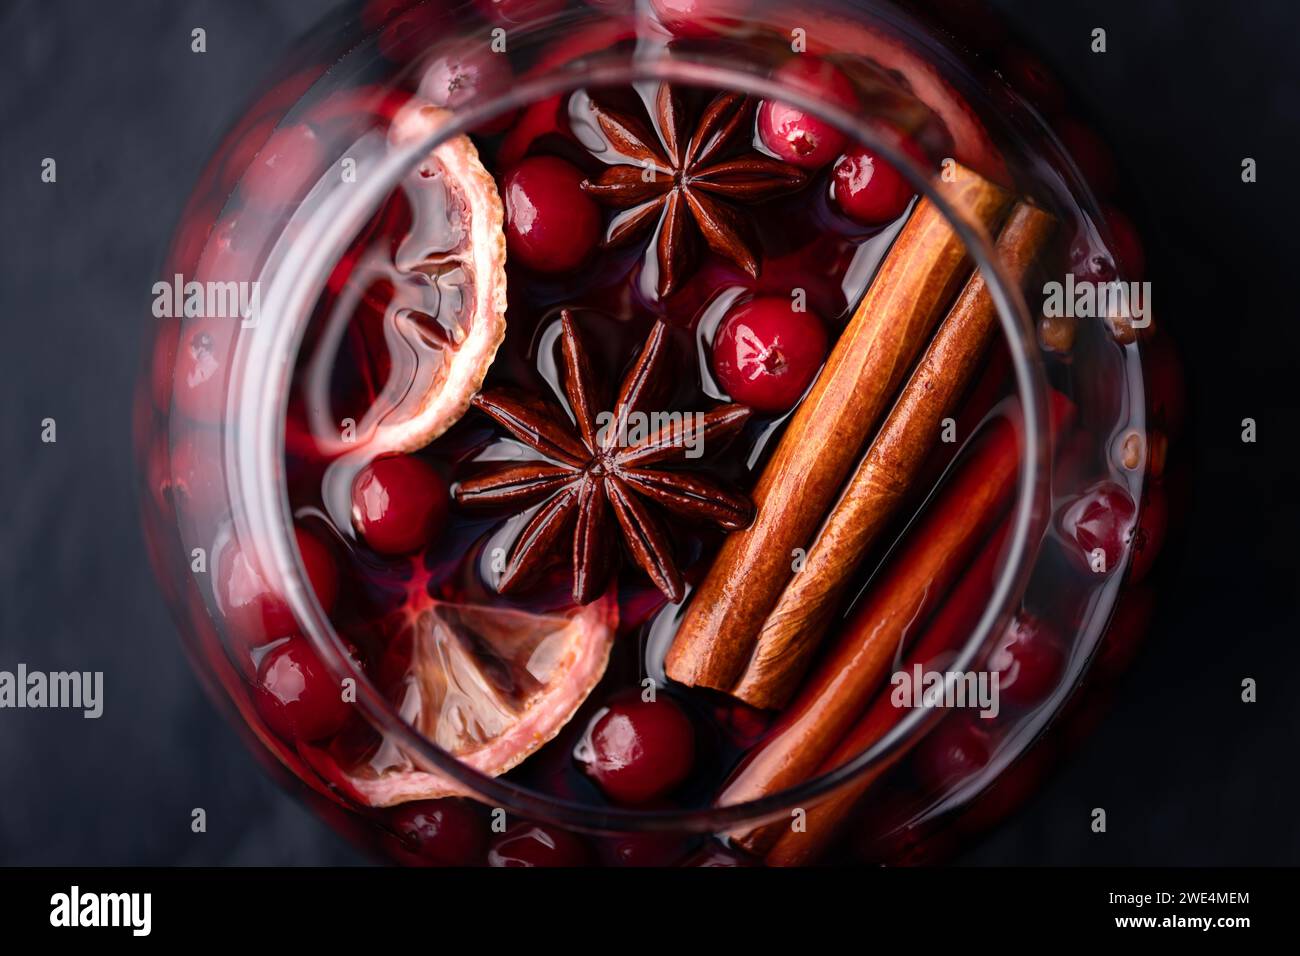 Vue de dessus du vin chaud dans le verre avec des tranches d'orange, bâton de cannelle, anis étoilé, romarin et canneberges en gros plan. Photographie culinaire Banque D'Images